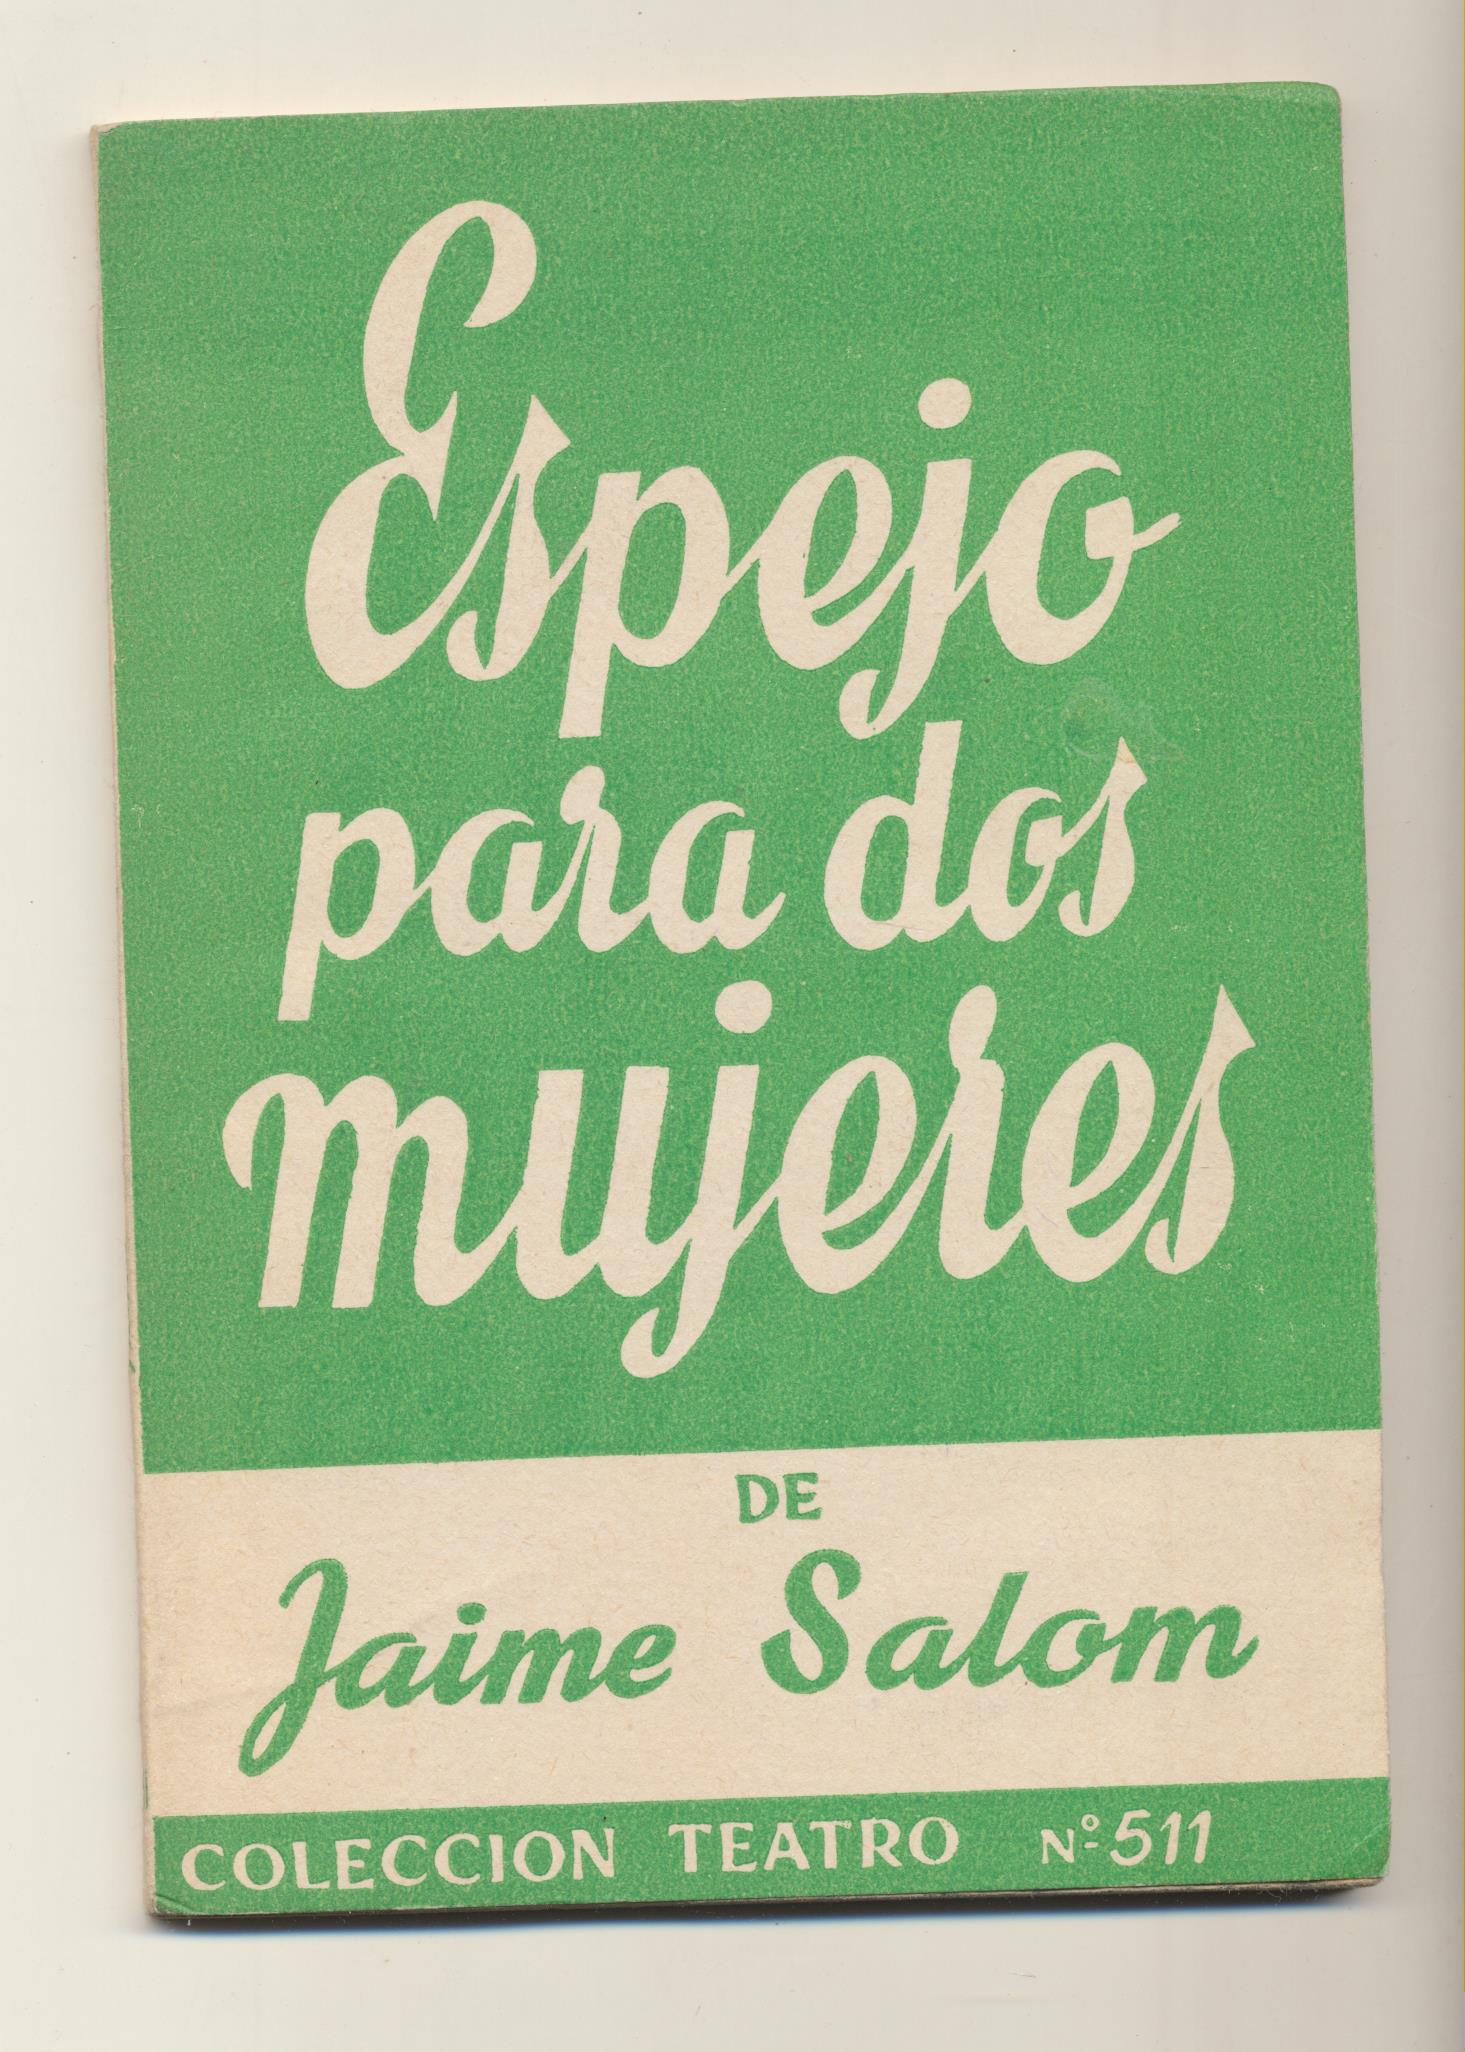 Colección Teatro nº 511. Espejo para dos mujeres de Jaime Salom. Escelicer 1966